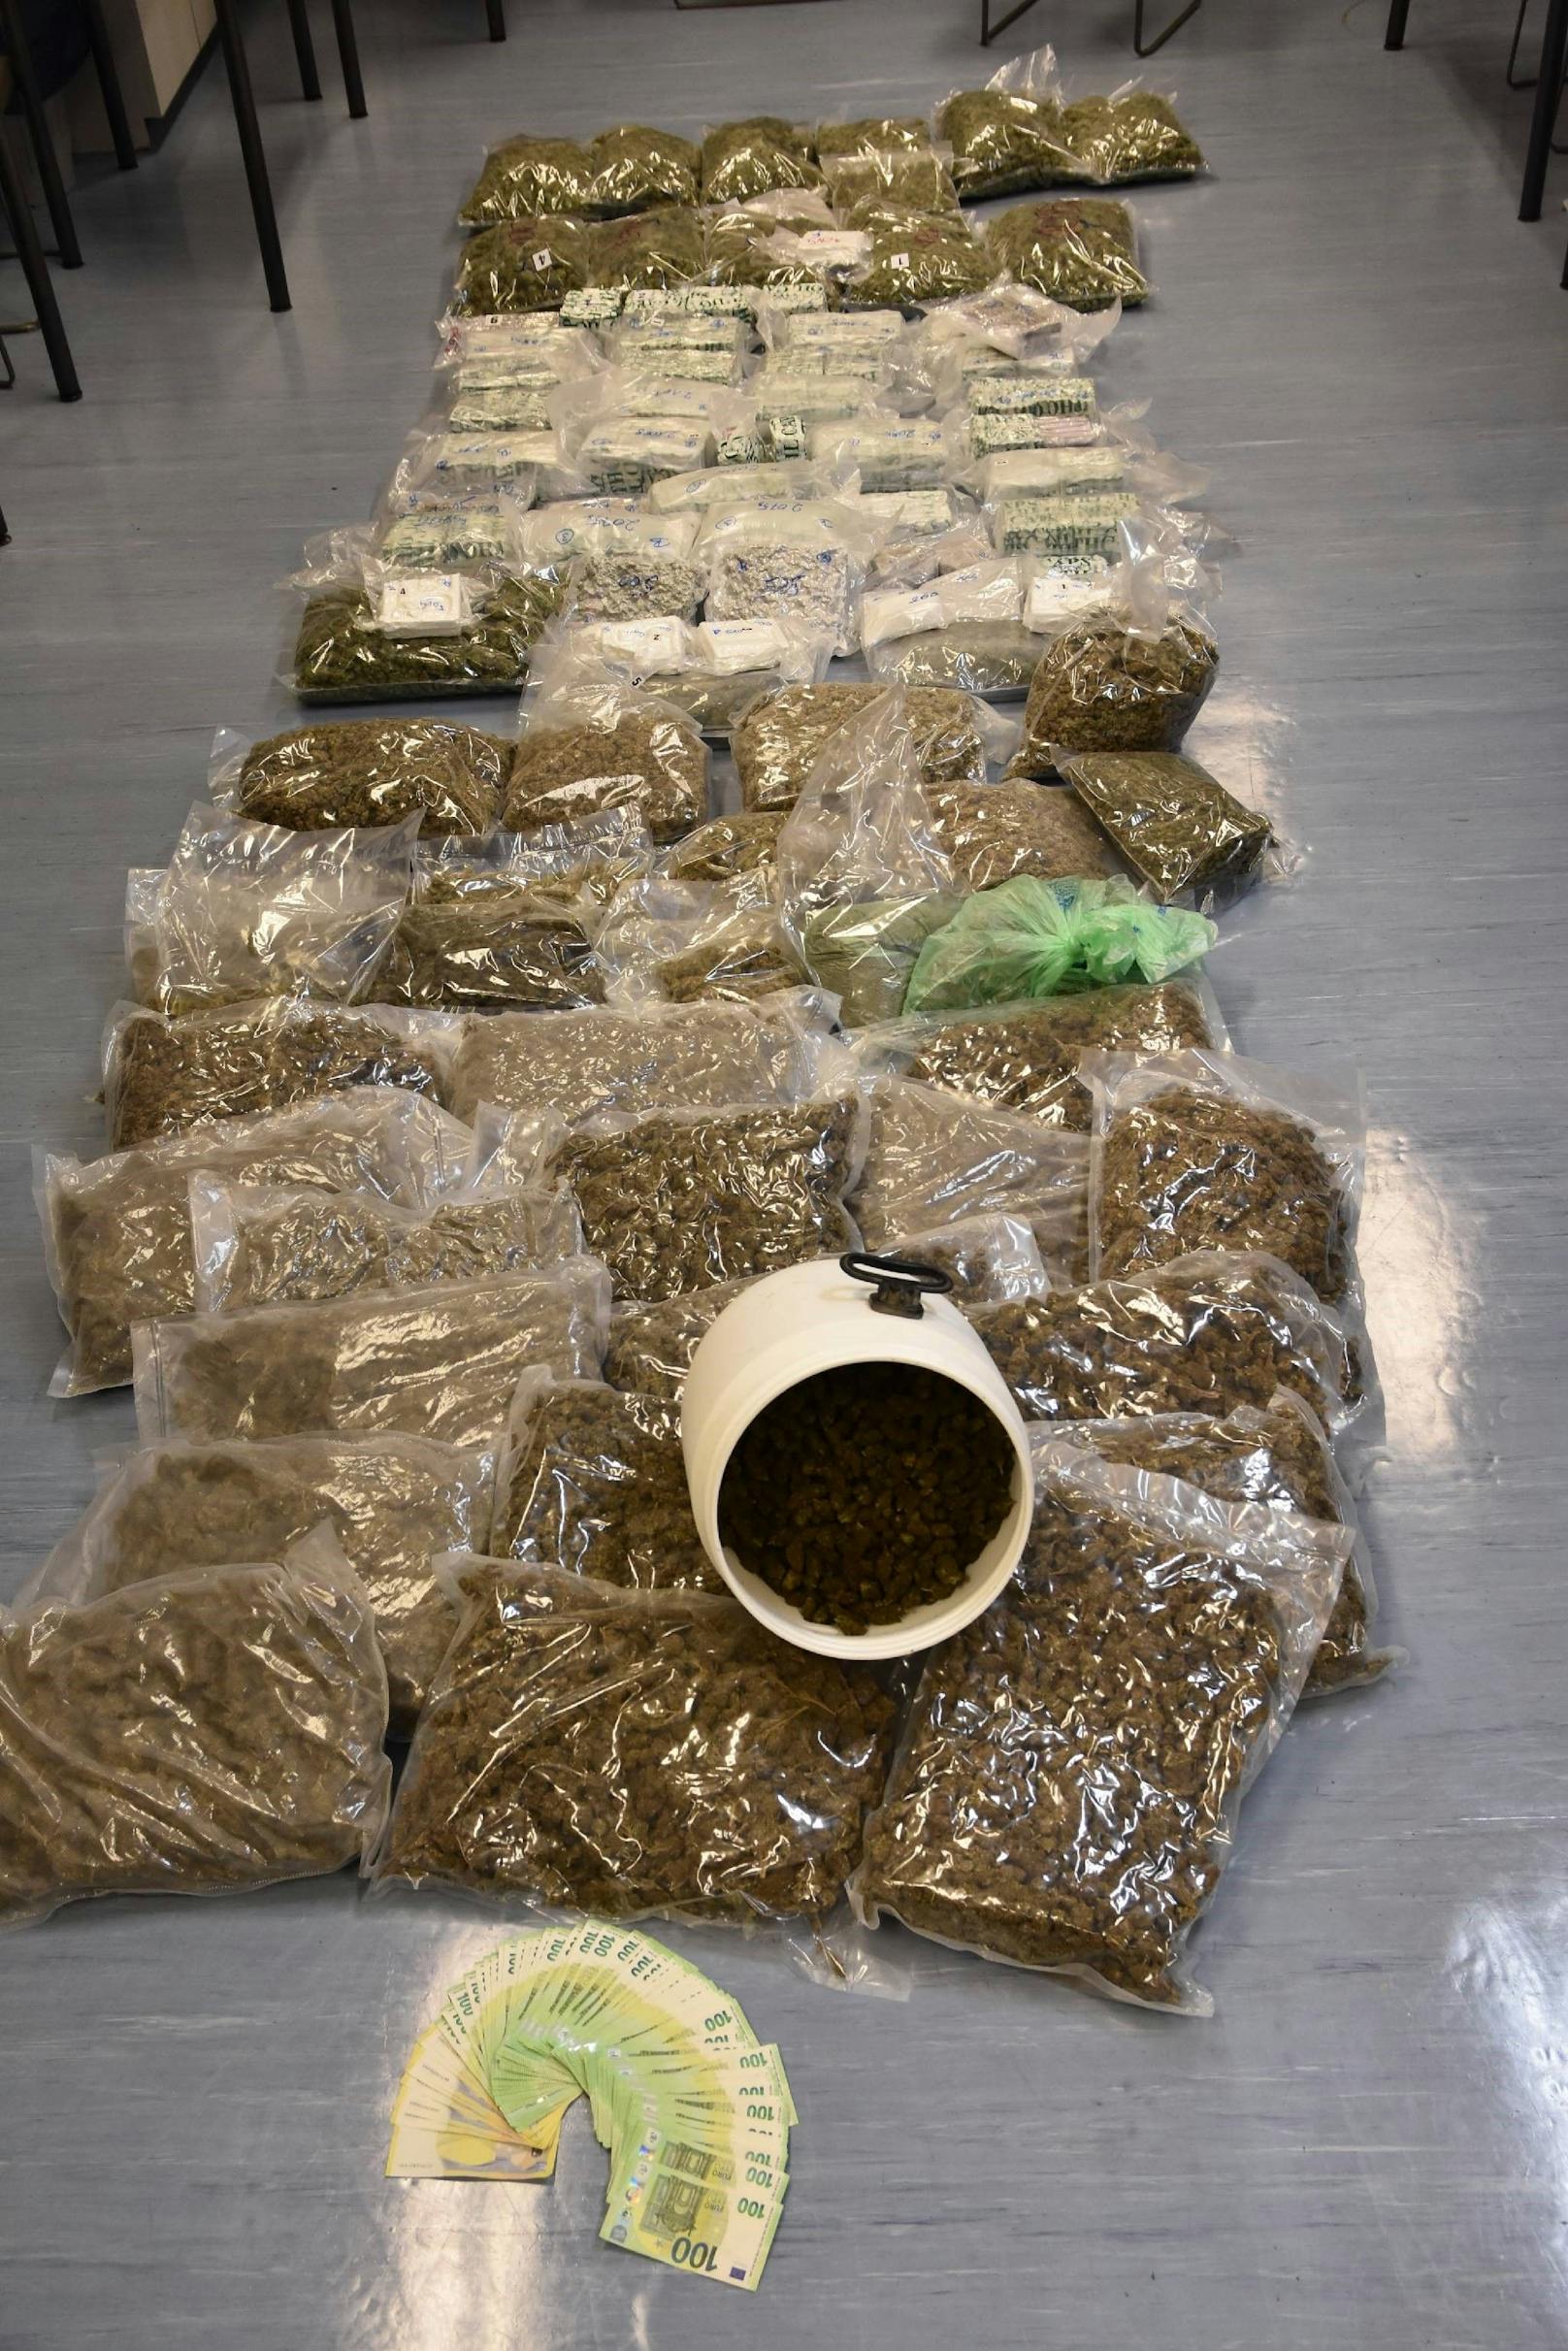 Insgesamt wurden 107 Kilo Cannabis, drei Kilo Kokain und  9.700 Euro Bargeld sichergestellt.